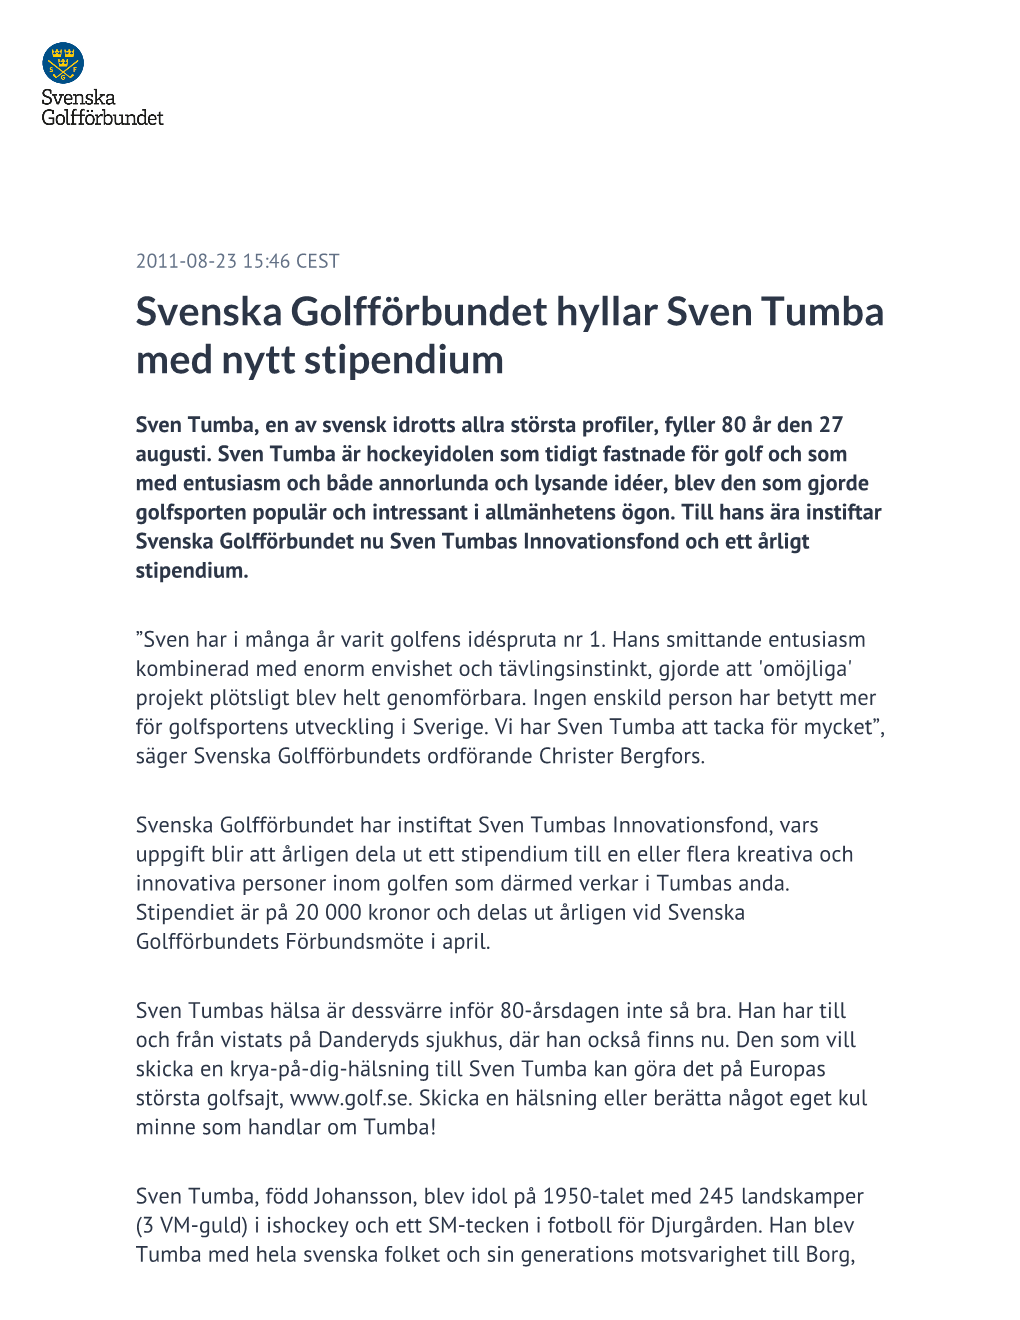 Svenska Golfförbundet Hyllar Sven Tumba Med Nytt Stipendium